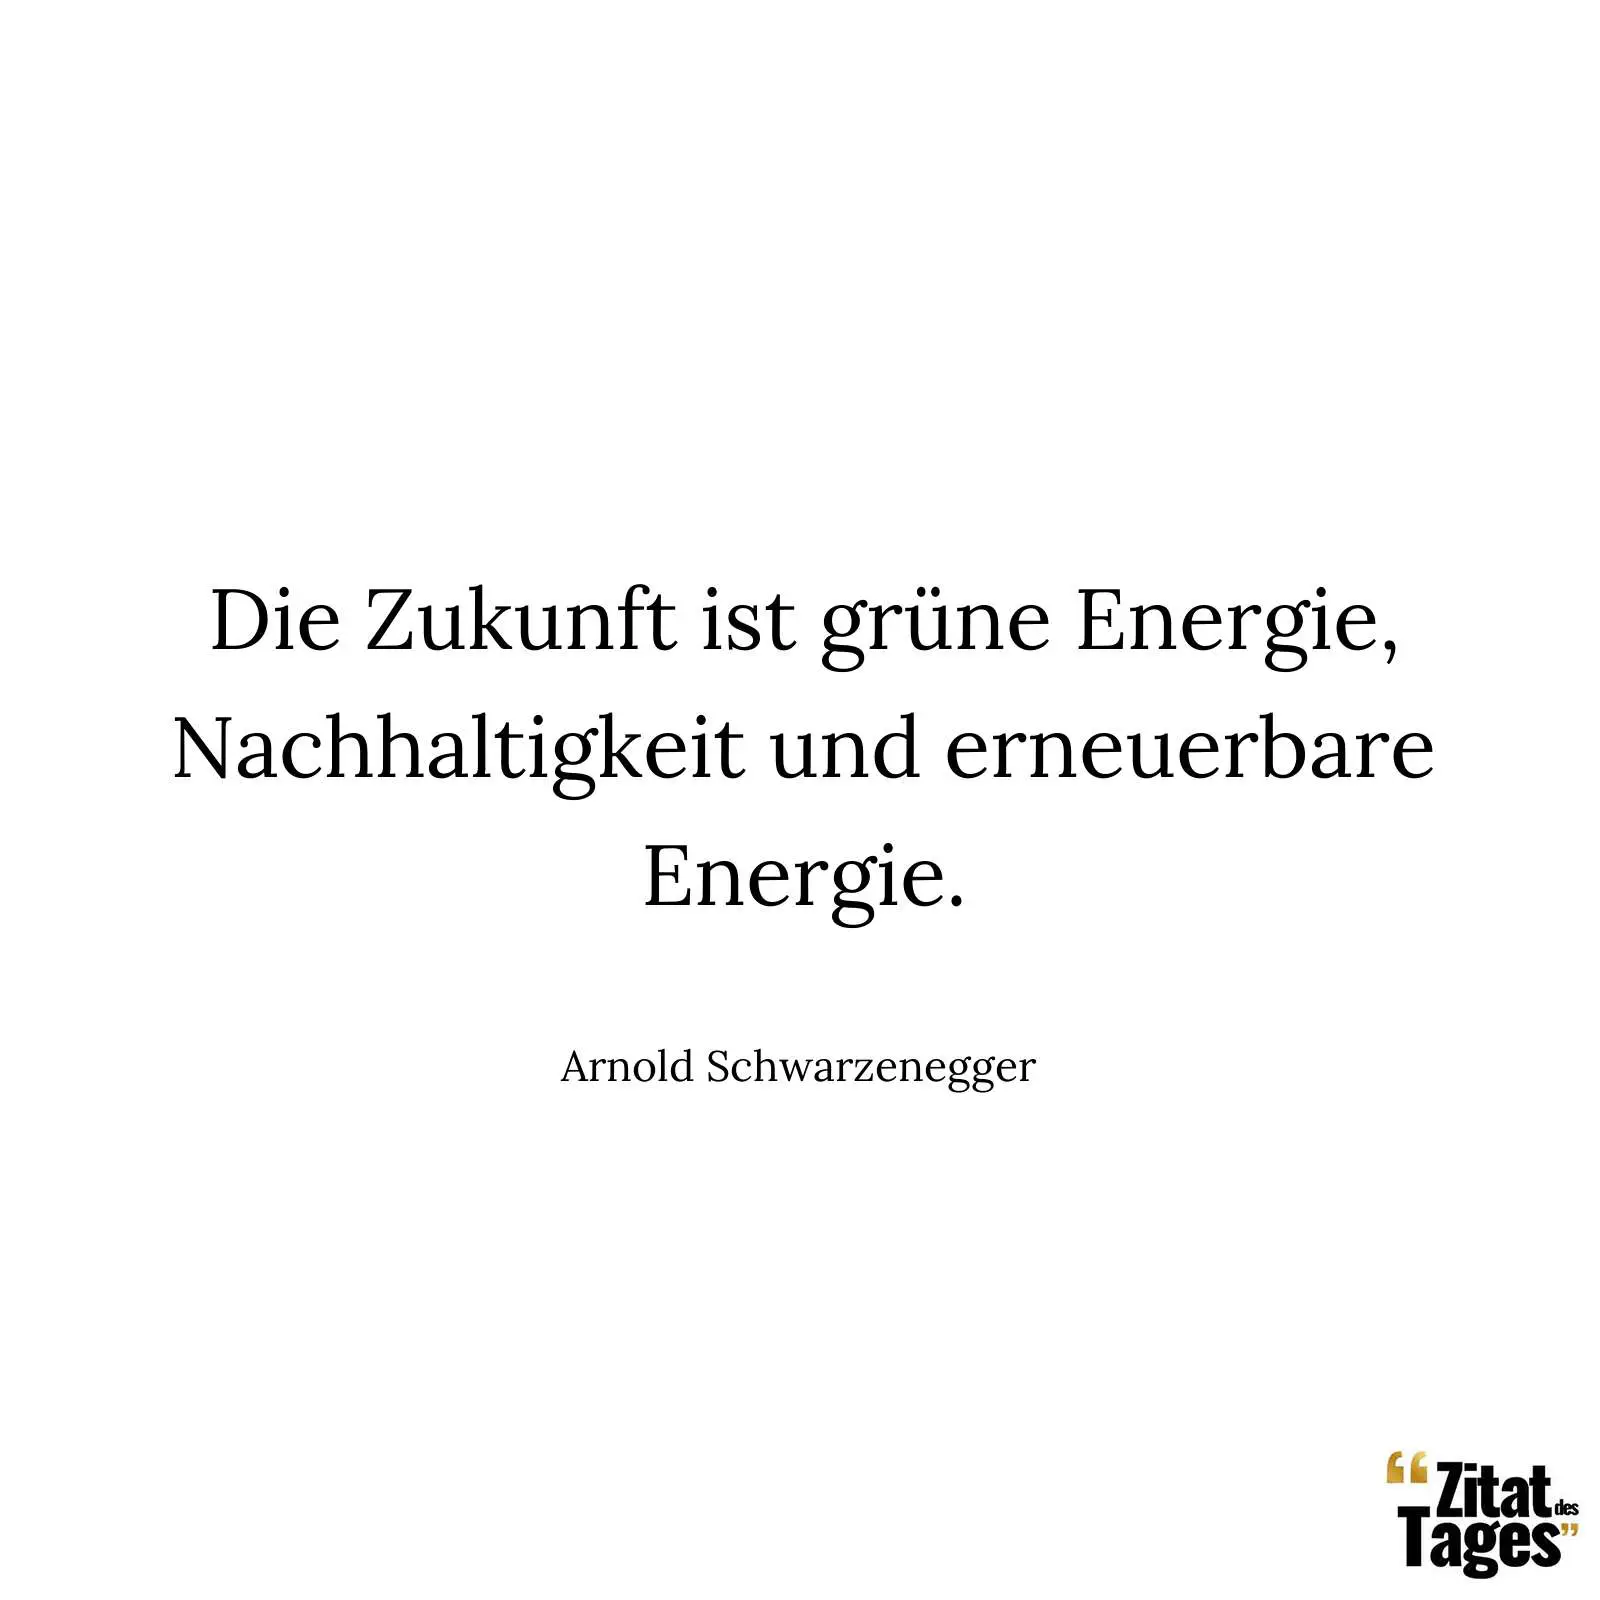 Die Zukunft ist grüne Energie, Nachhaltigkeit und erneuerbare Energie. - Arnold Schwarzenegger